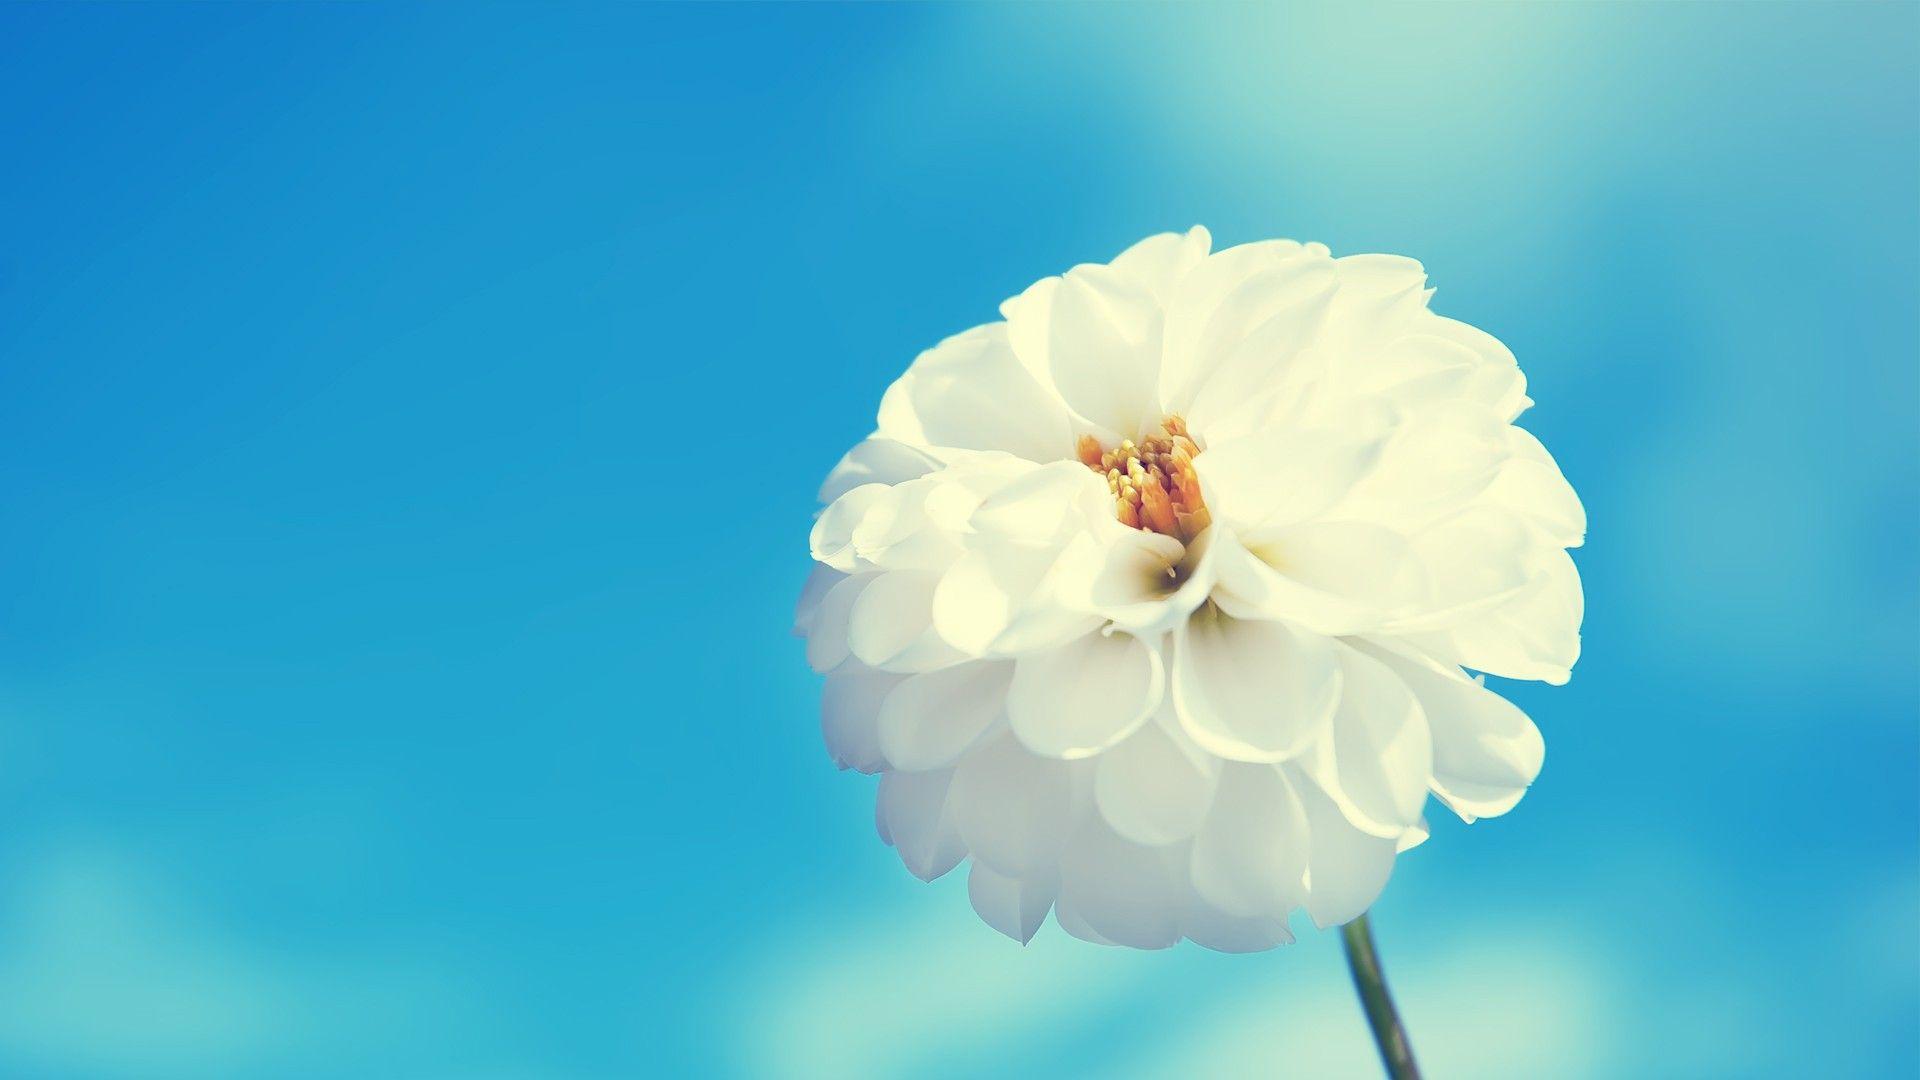 Hoa trắng là biểu tượng của sự trong sáng và tinh khiết. Năm 2024, mọi người có thể tìm thấy những bức ảnh đầy mê hoặc về những bông hoa trắng, từ hoa hồng, hoa cúc tới hoa lan. Hãy đón xem những hình ảnh này để tận hưởng cảm giác thanh nhã và thanh tịnh.